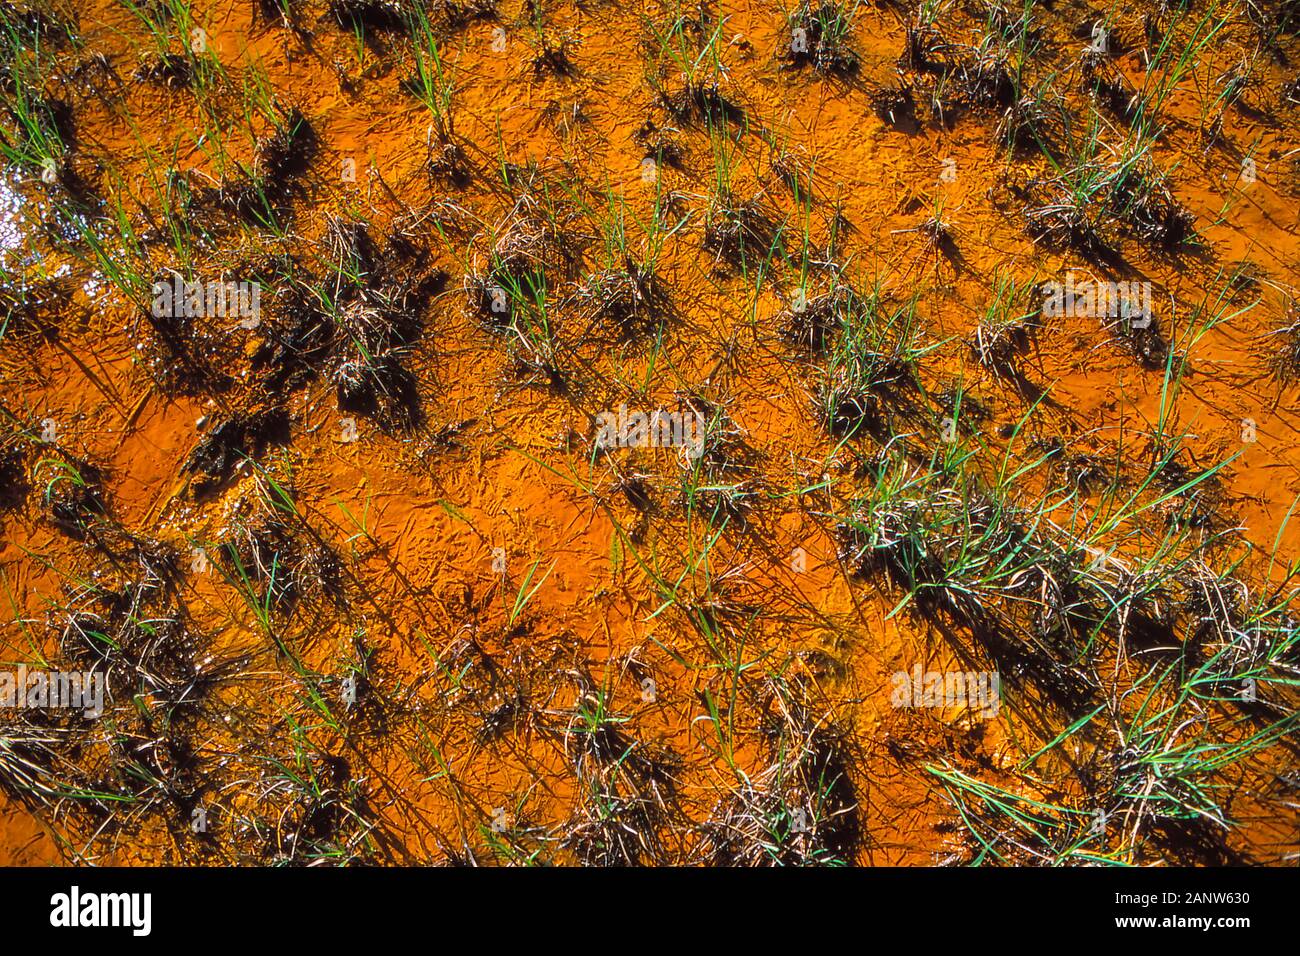 Red and orange ochre clay fields, Kootenay National Park  Canada. Stock Photo